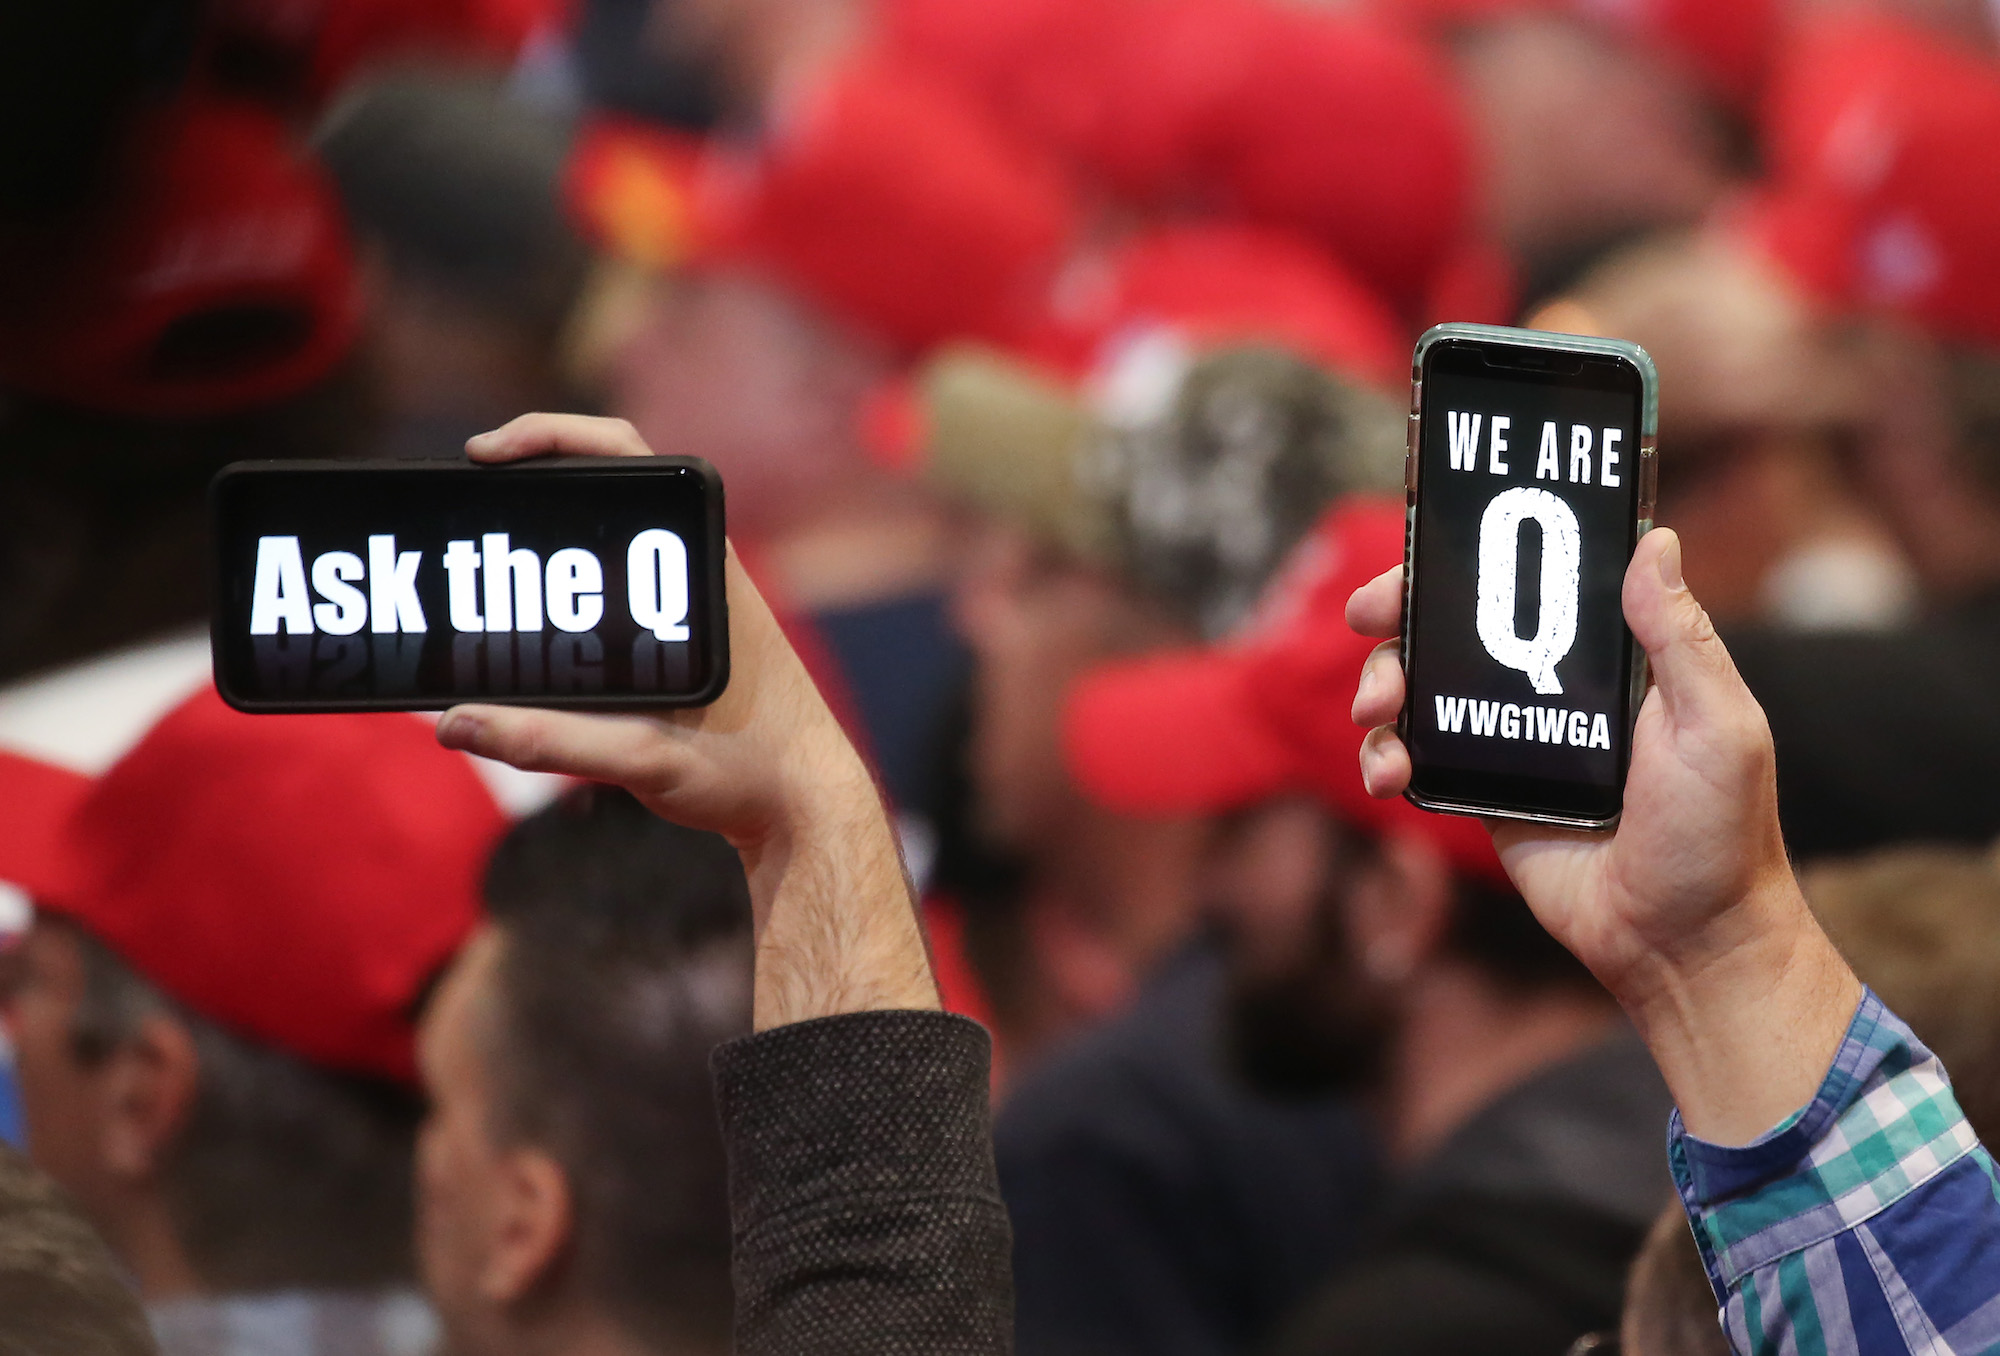 Người dân giơ điện thoại thông minh có các thông điệp liên quan đến QAnon trên màn hình trong một cuộc biểu tình ở Las Vegas, Nevada, vào ngày 21/2/2020. (Ảnh Mario Tama / Getty Images)